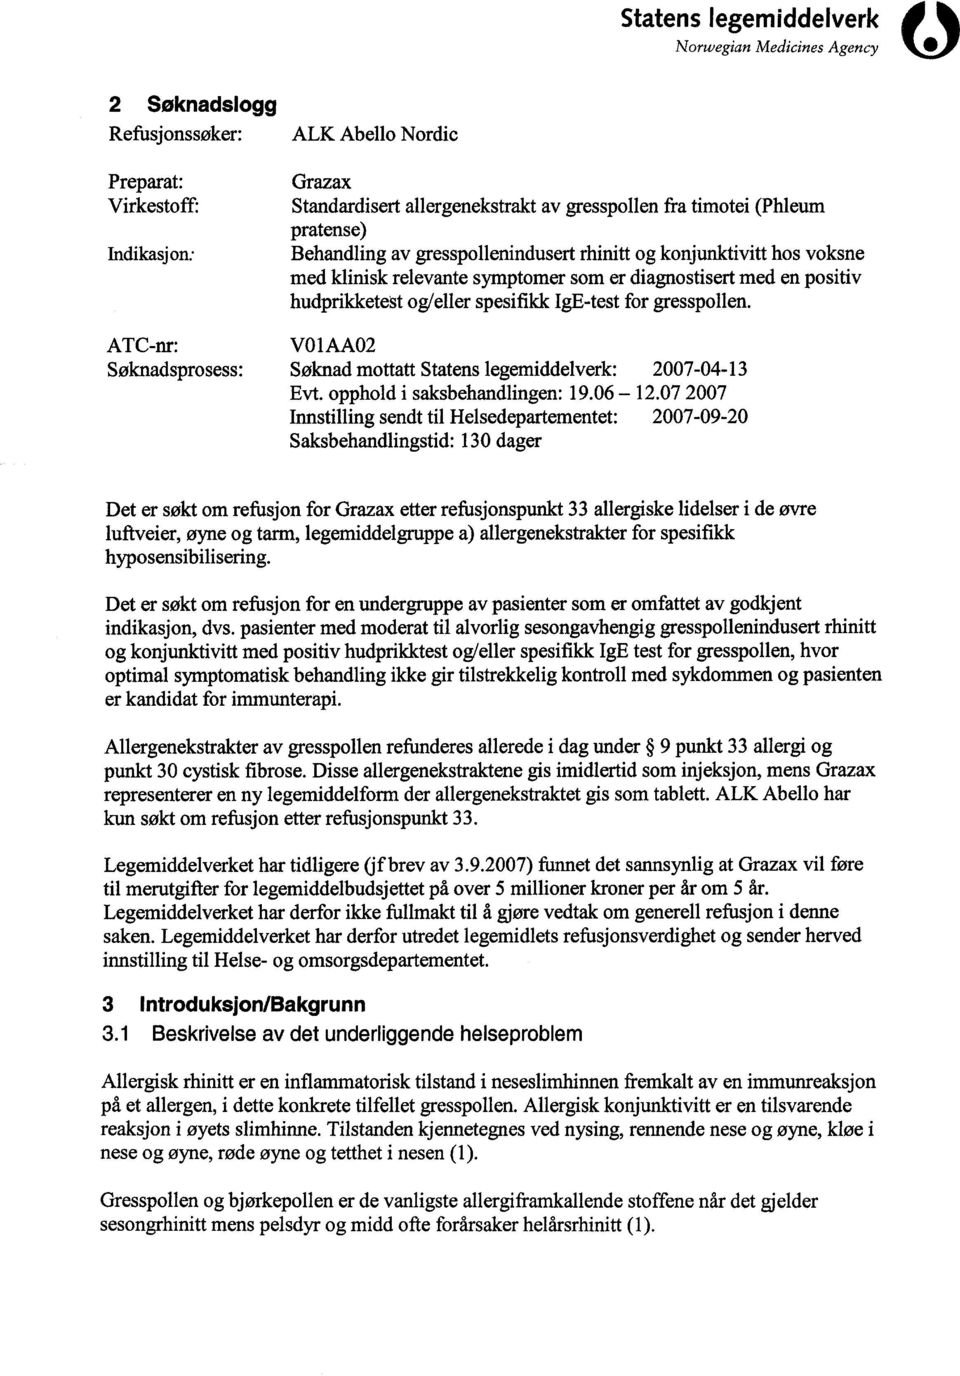 VO 1 AA02 Søknad mottatt Statens legemiddelverk : 2007-04-13 Evt. opphold i saksbehandlingen : 19.06-12.